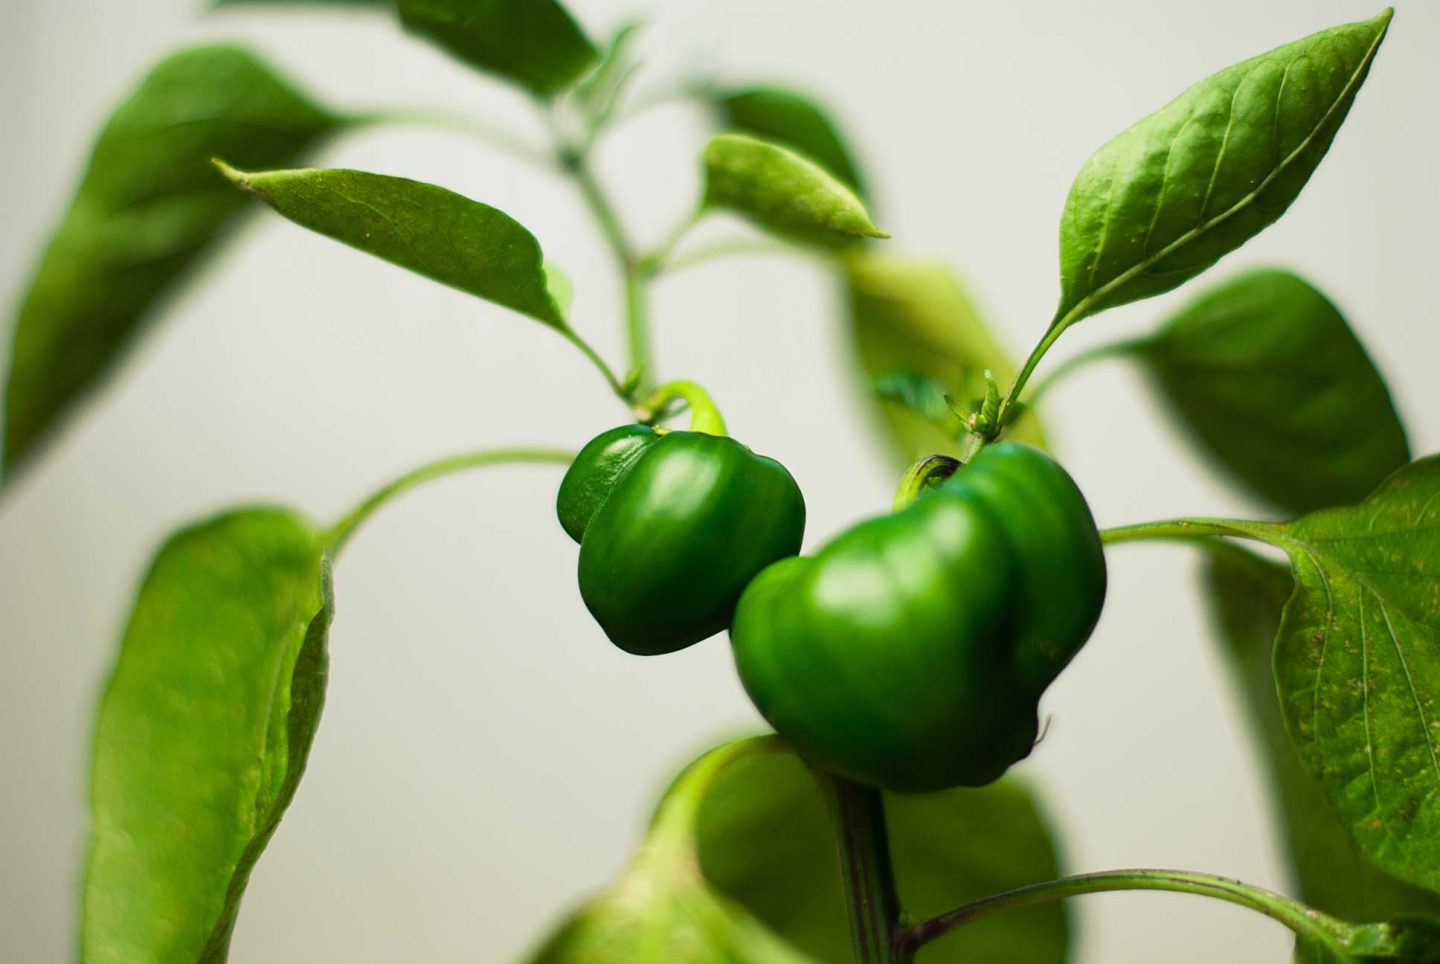 Green bell pepper plants